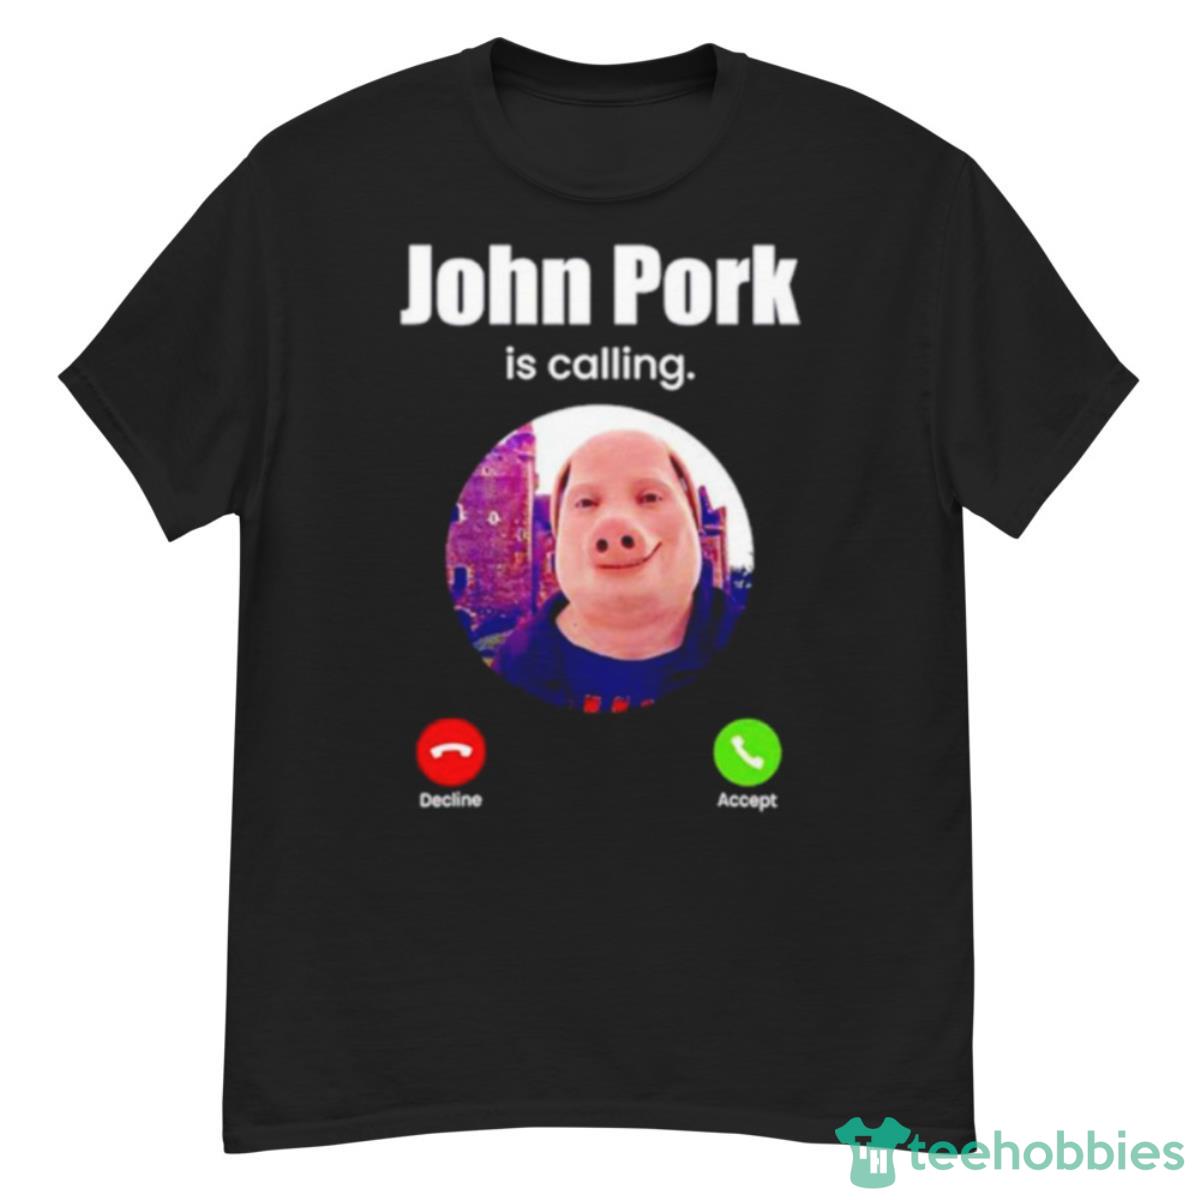 Happy Holidays from John Pork, John Pork / John Pork Is Calling